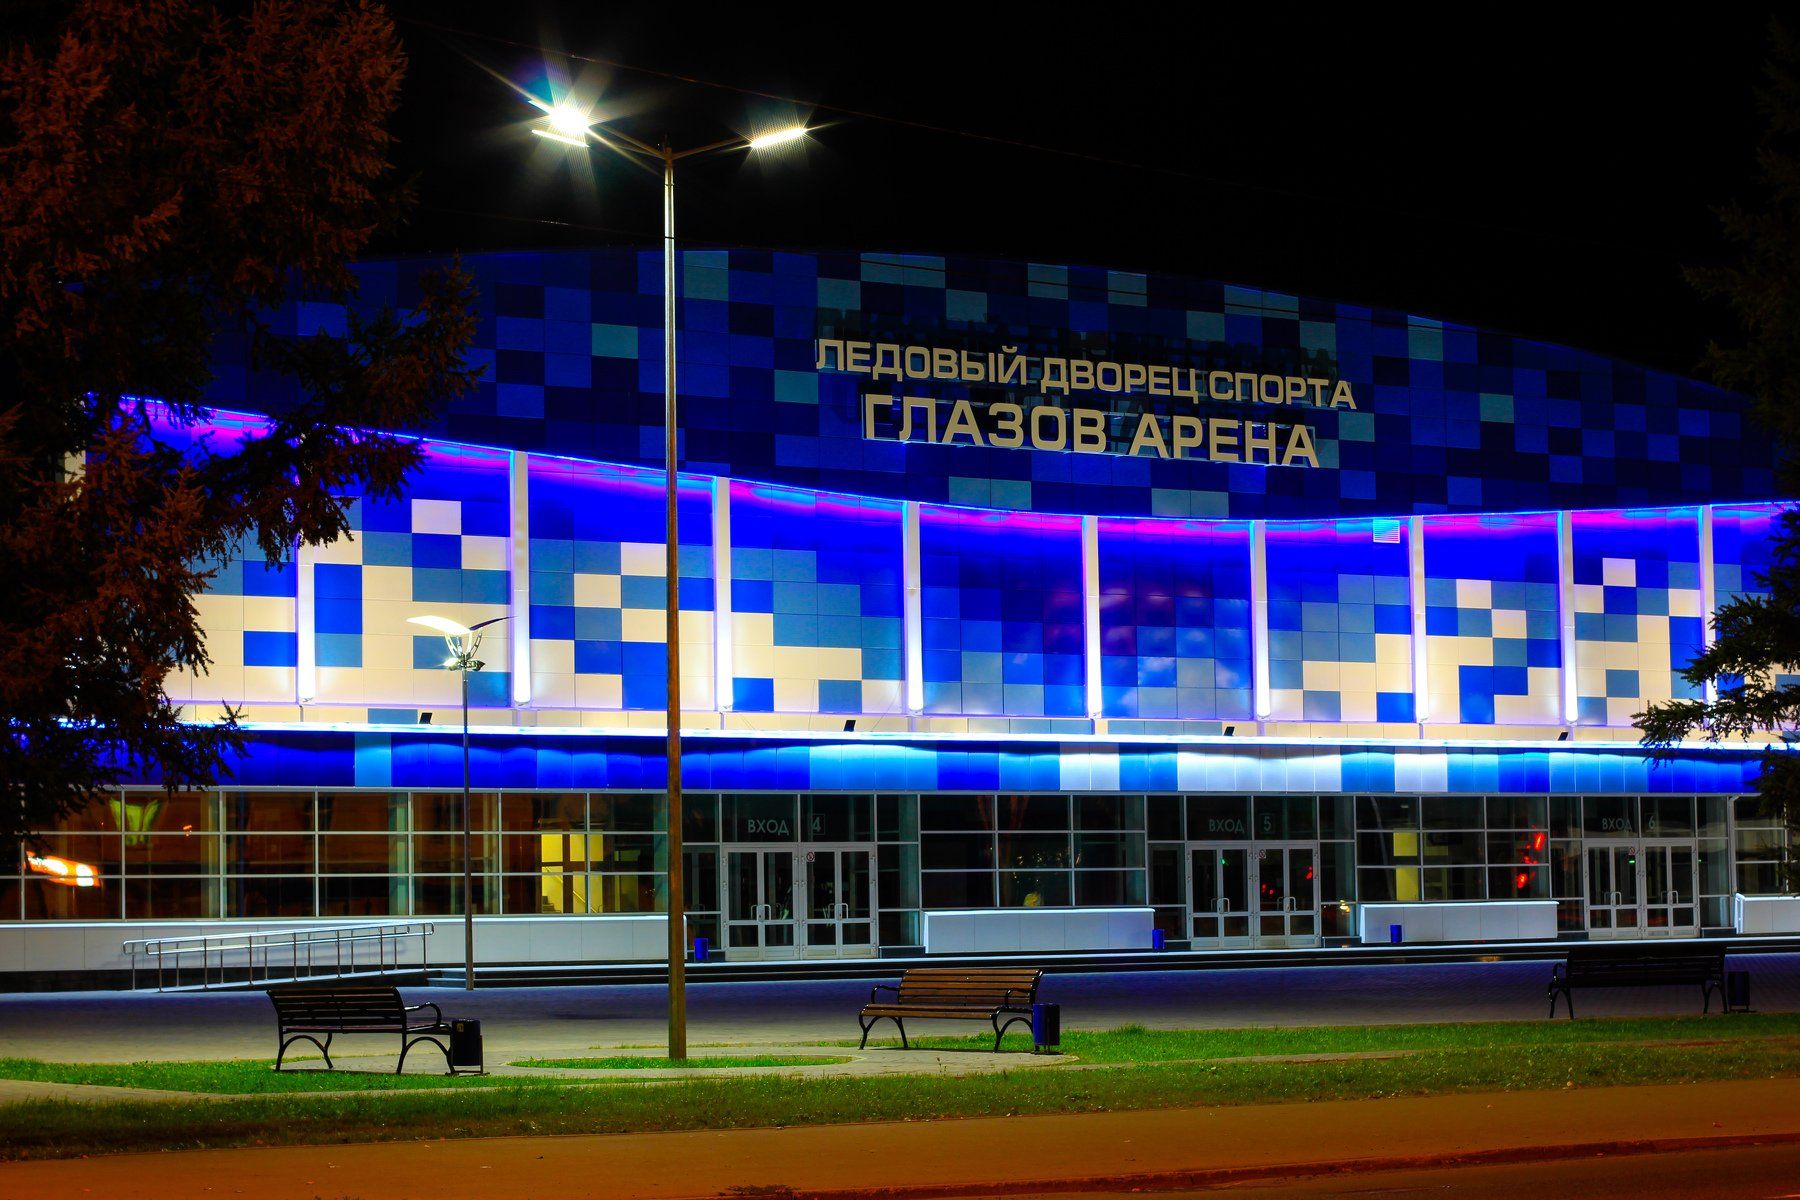 ледовый дворец спорта, Andrej Simanov